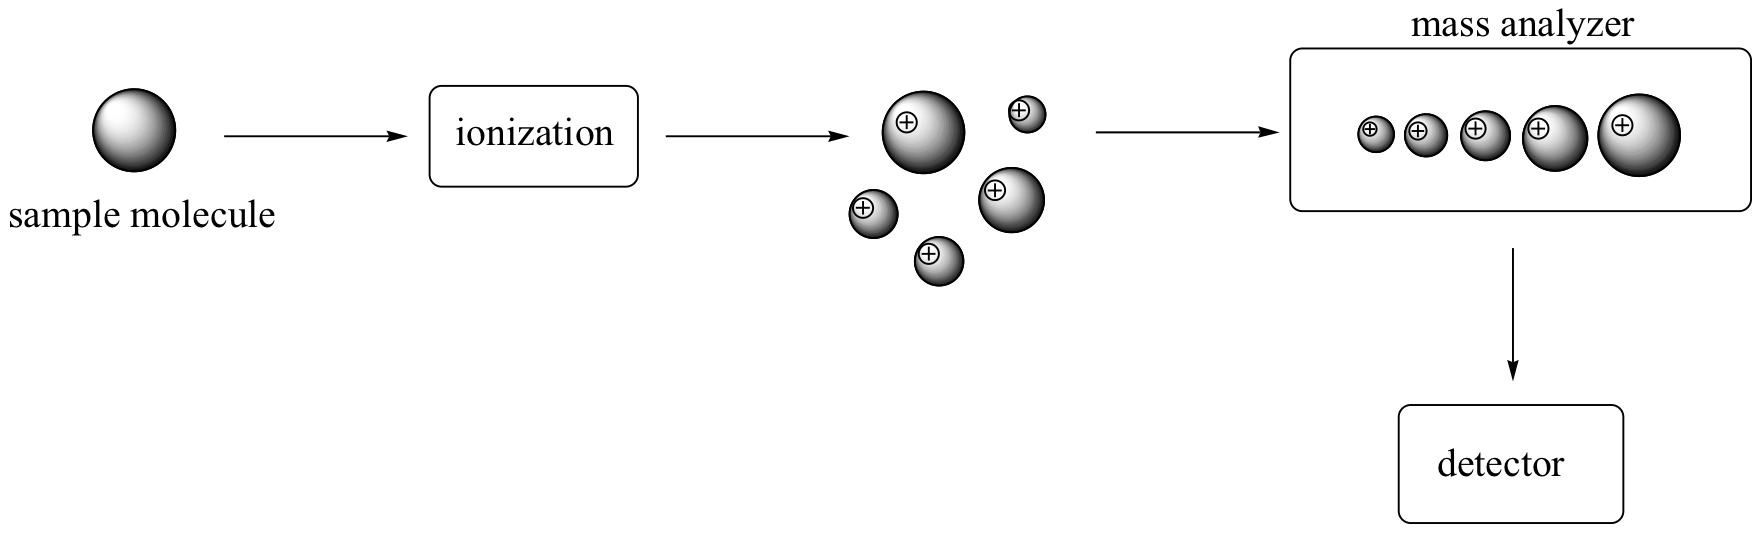 Molécula de muestra representada como una bola. Flecha apuntando de molécula a ionización. Flecha de ionización a cinco bolas con cargas positivas. Flecha de bolas a analizador de masa con las bolas en una línea en orden de tamaño. Por último, una flecha que va al detector.